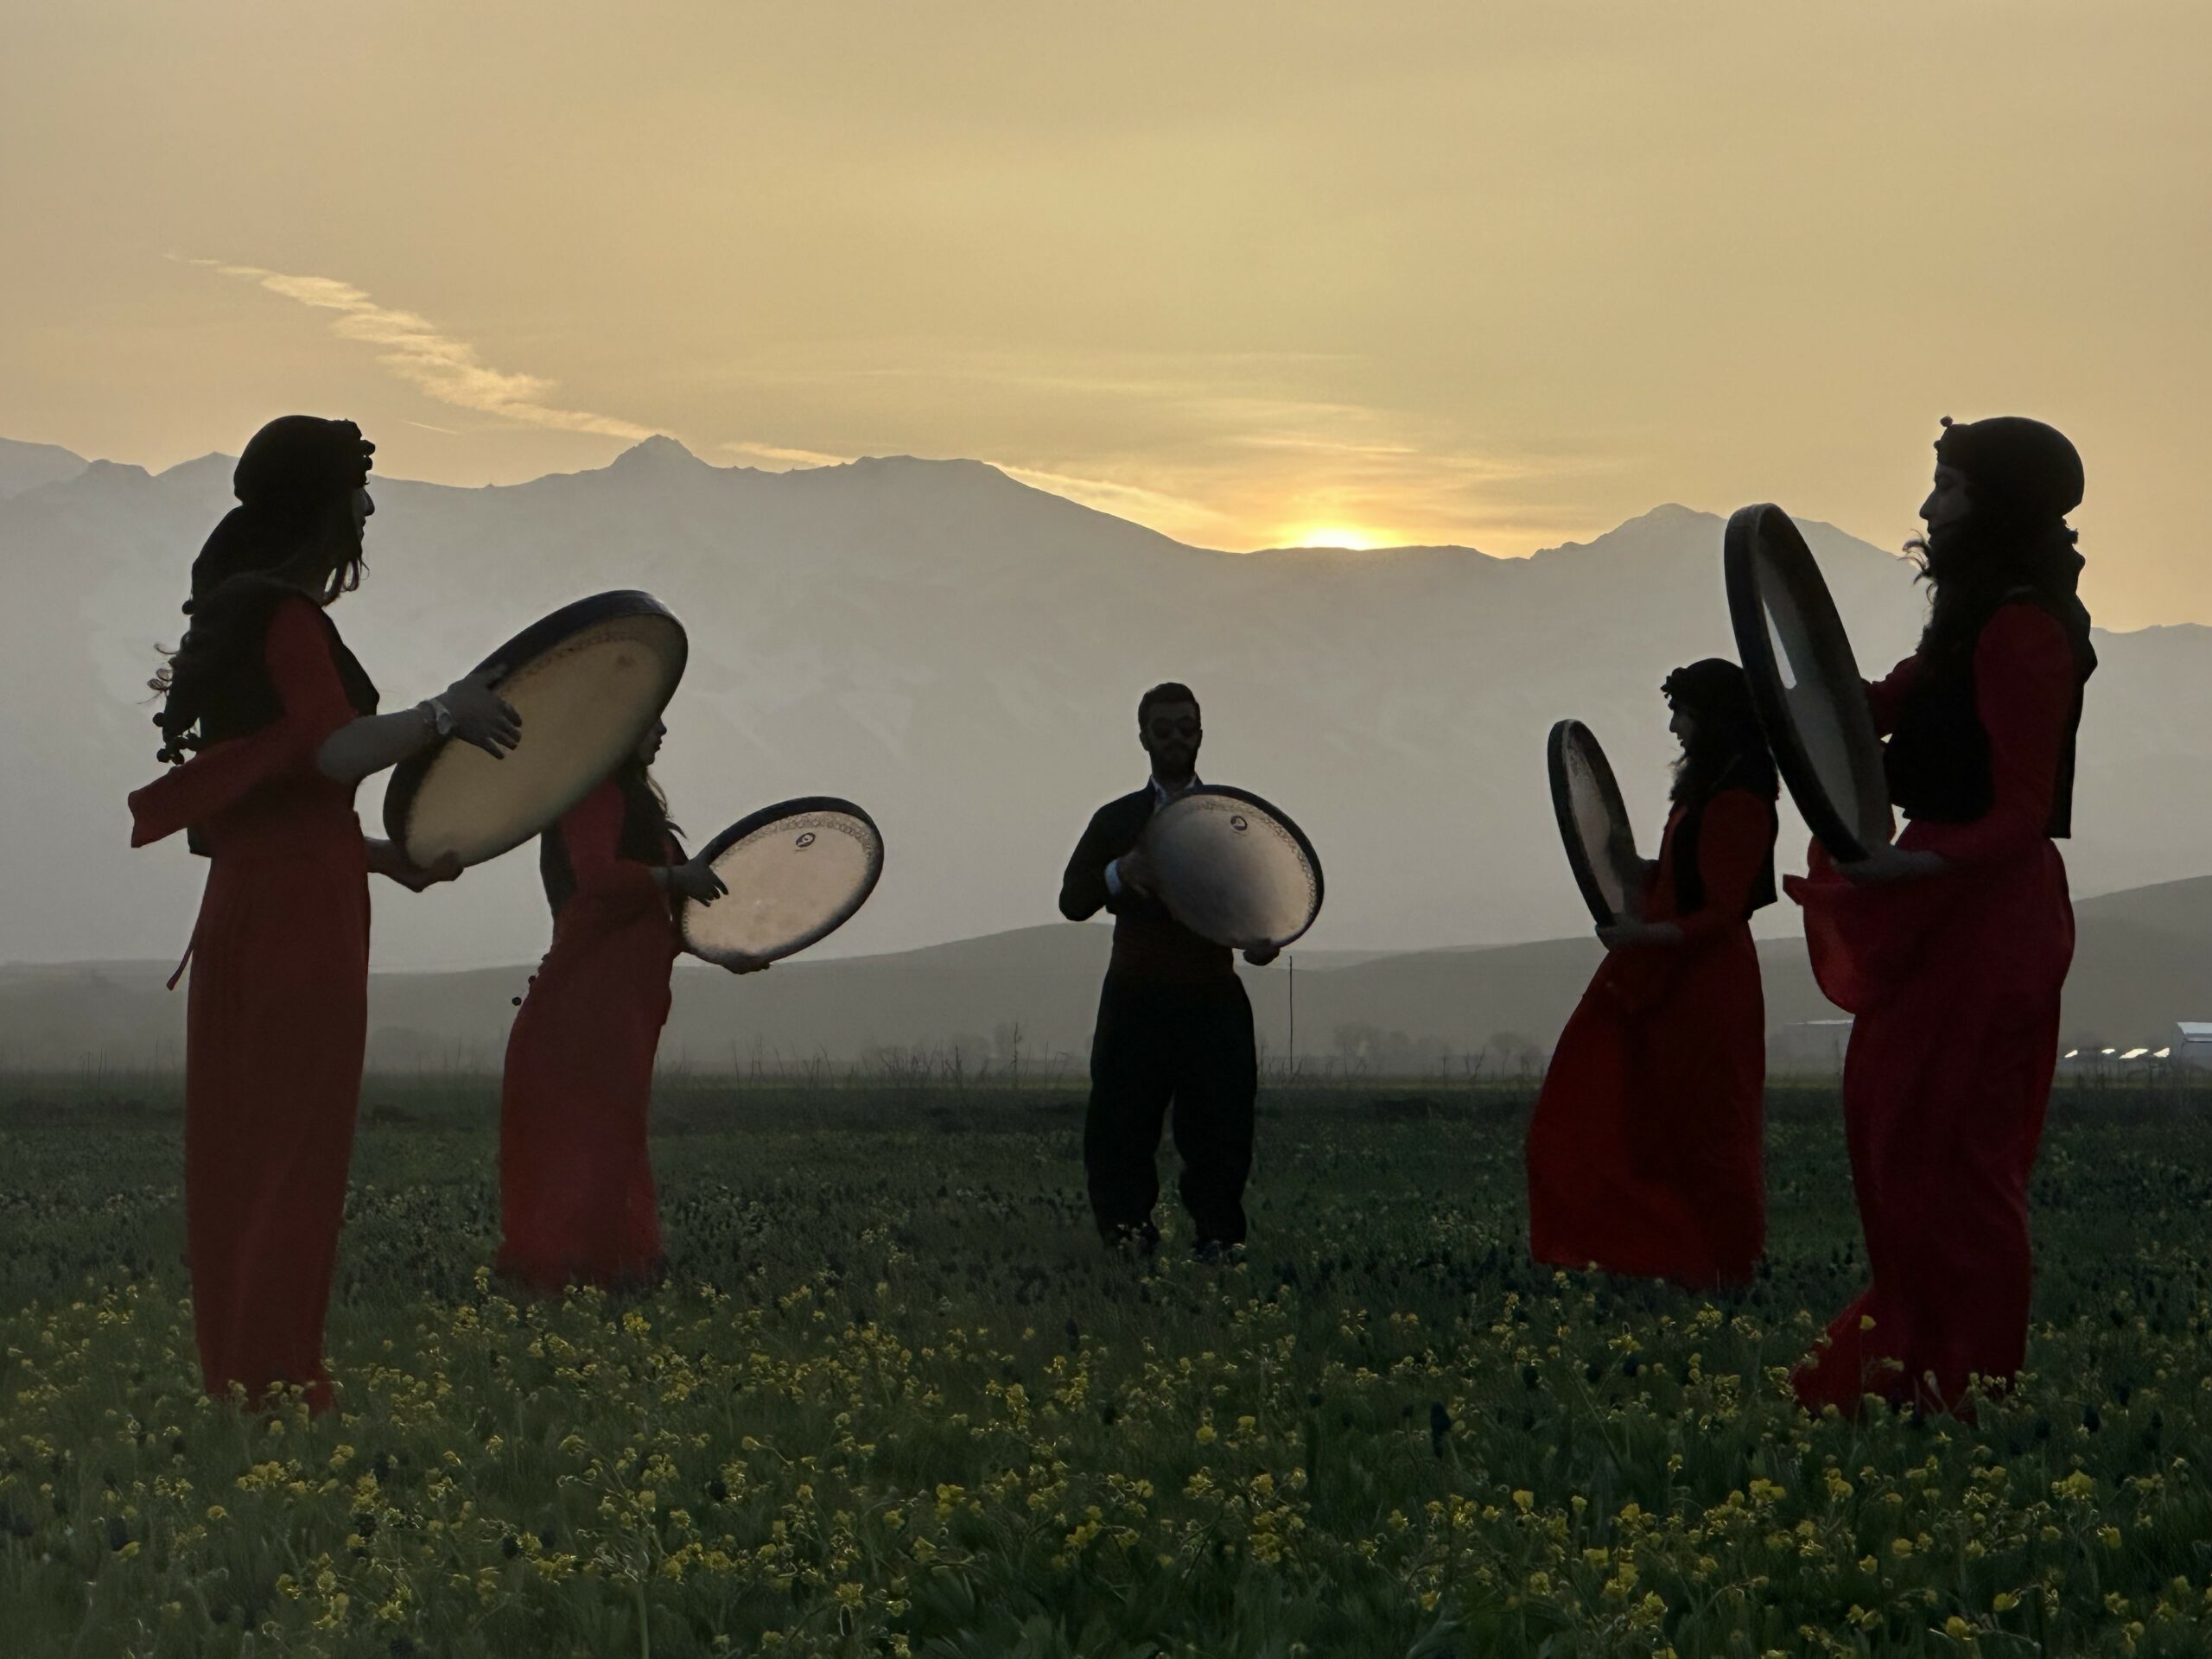 Cilo Dağı eteklerinde yöresel elbiselerle erbane gösterisi